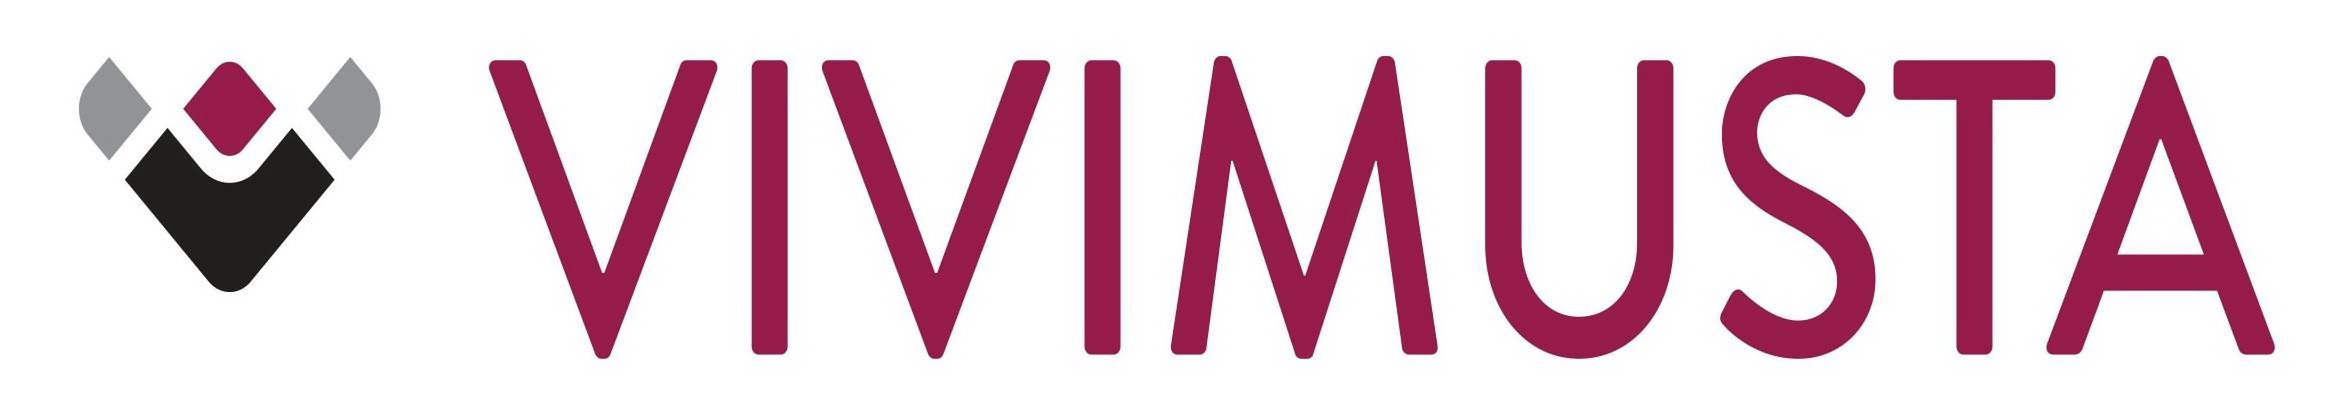 Trademark Logo VM VIVIMUSTA